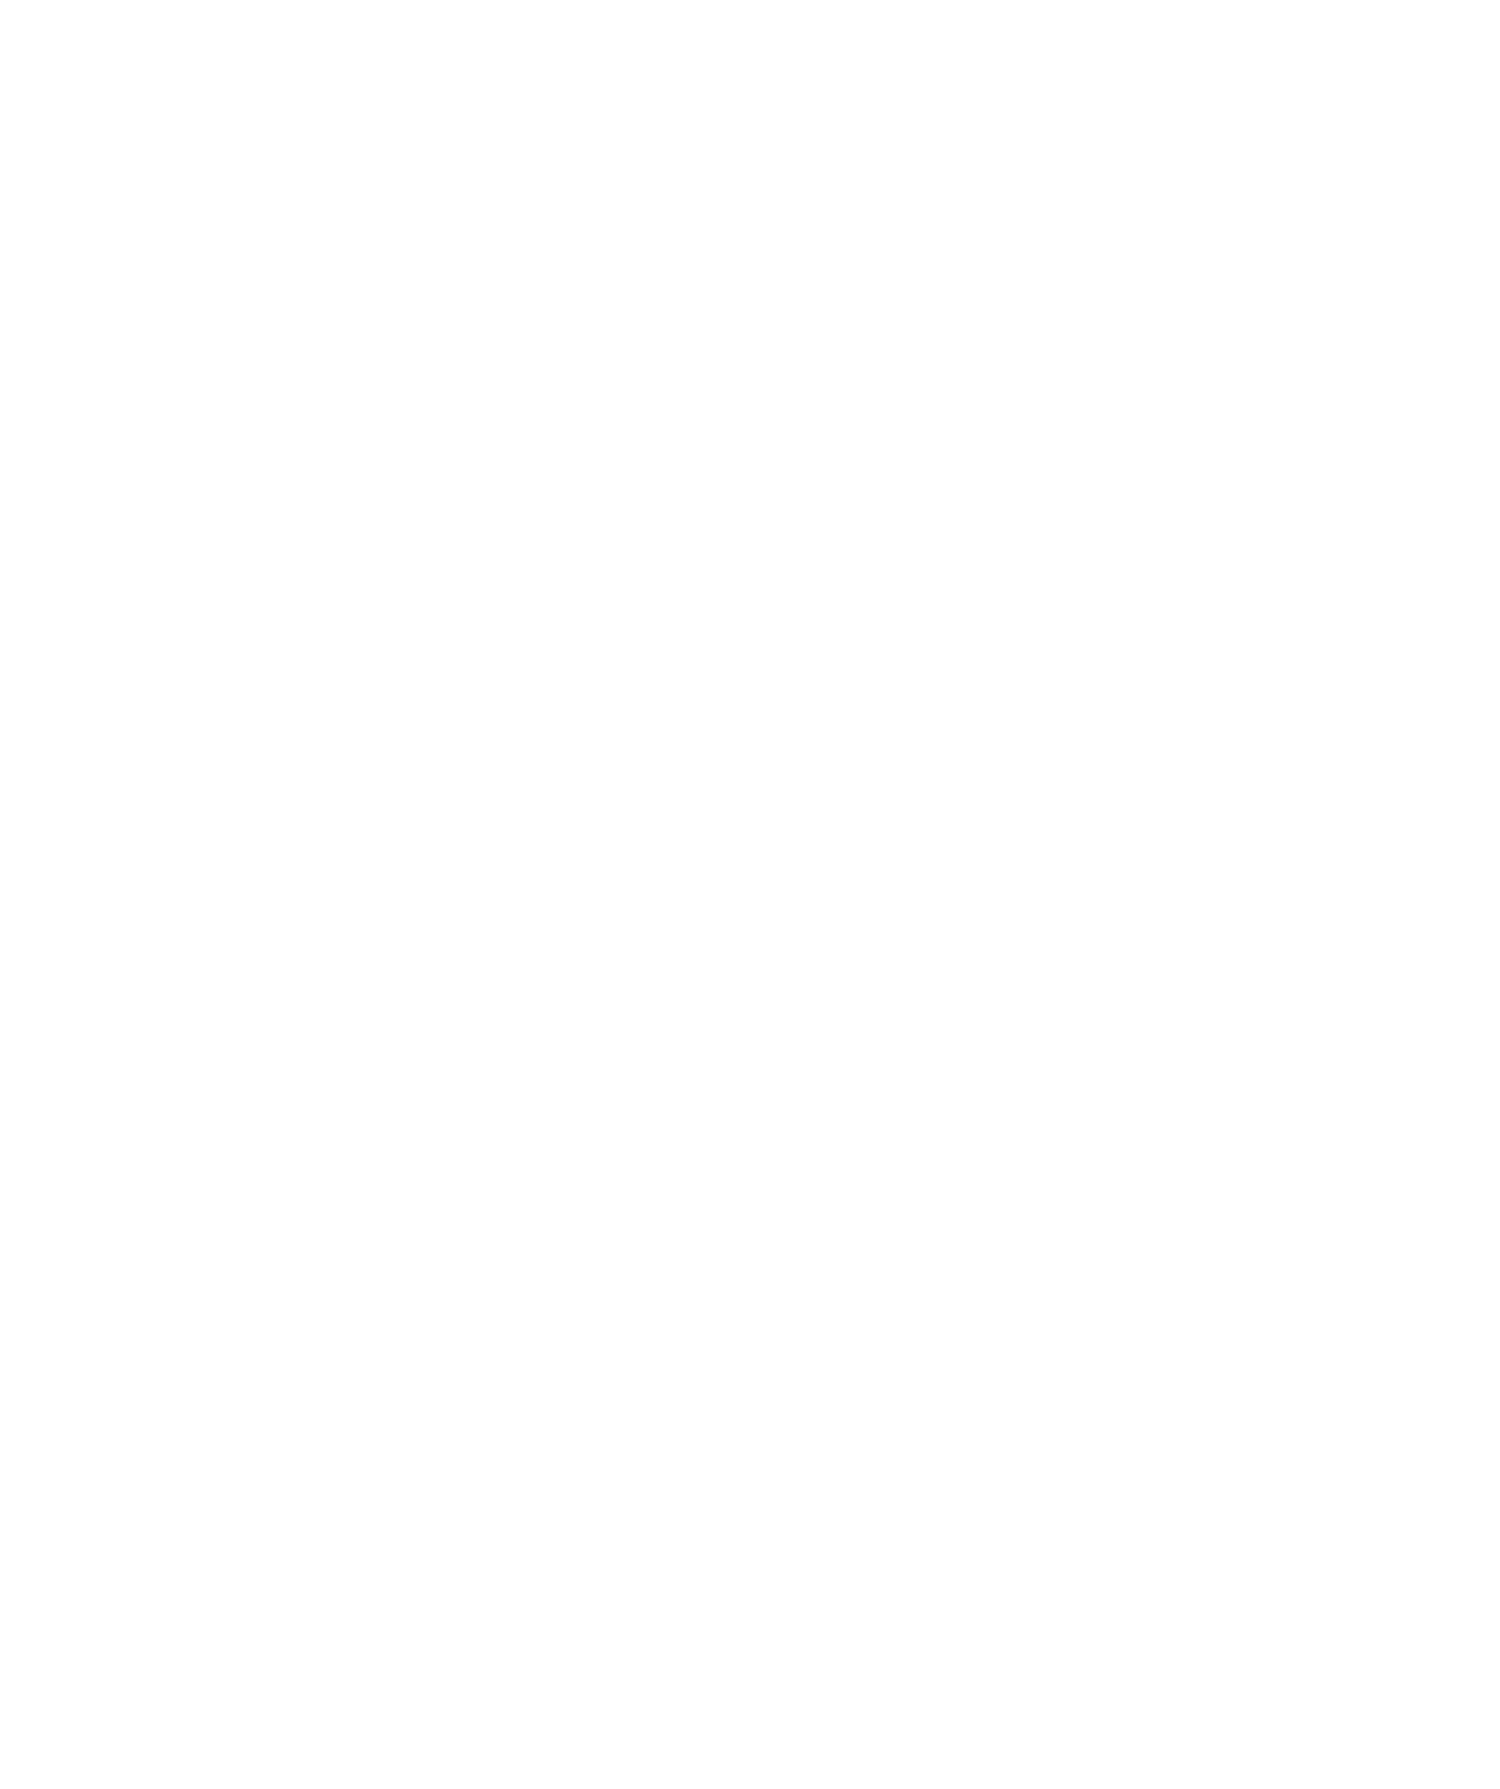 CLUB J